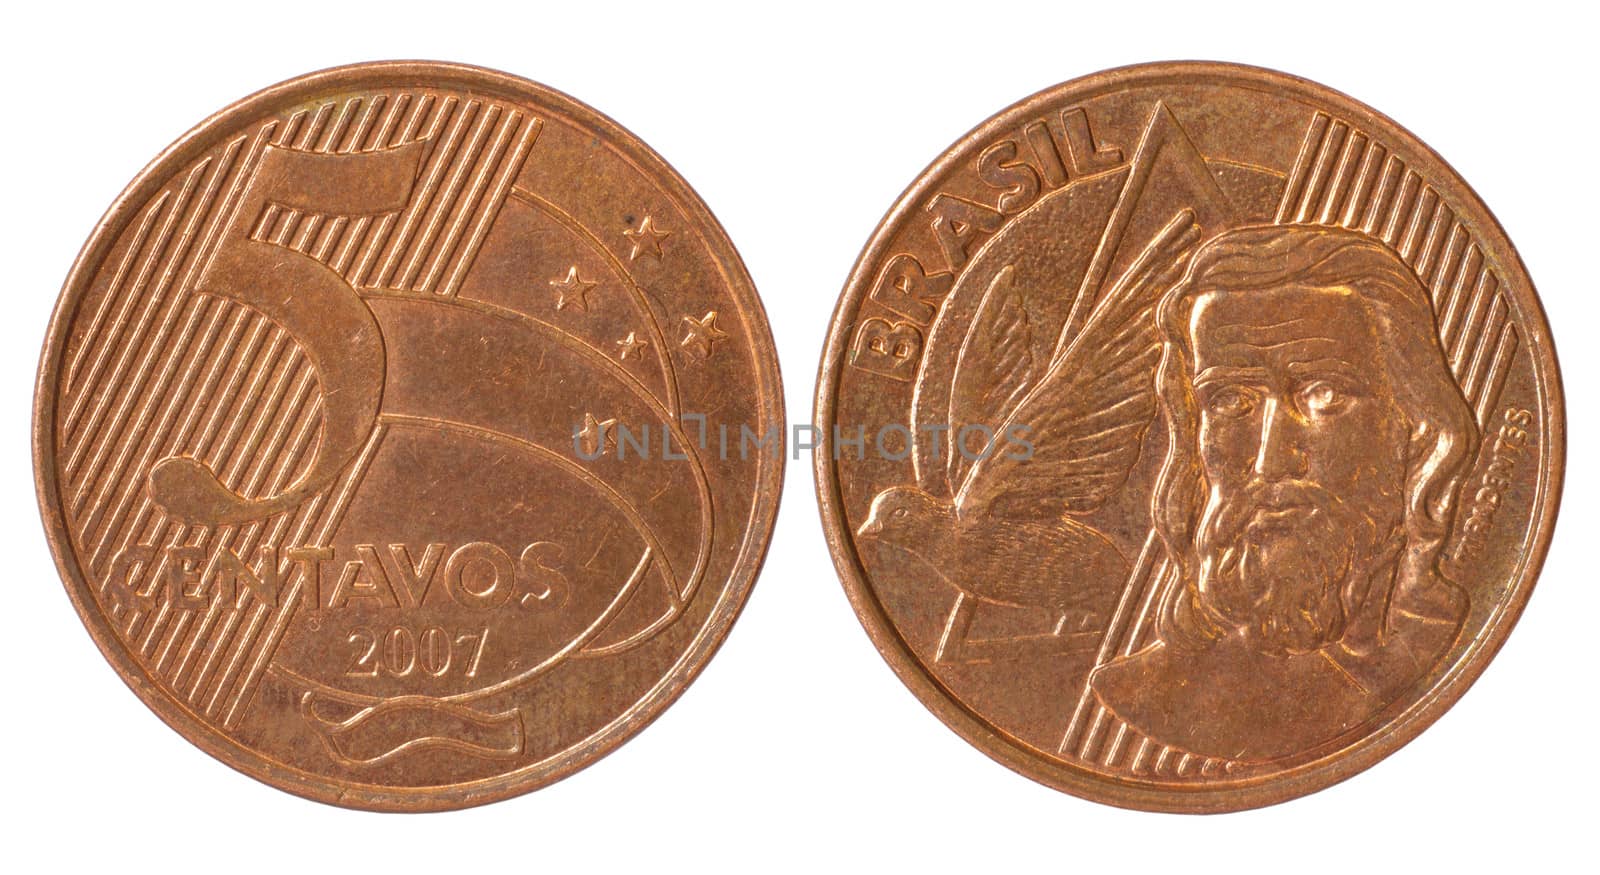 coin of brasil by raddnatt